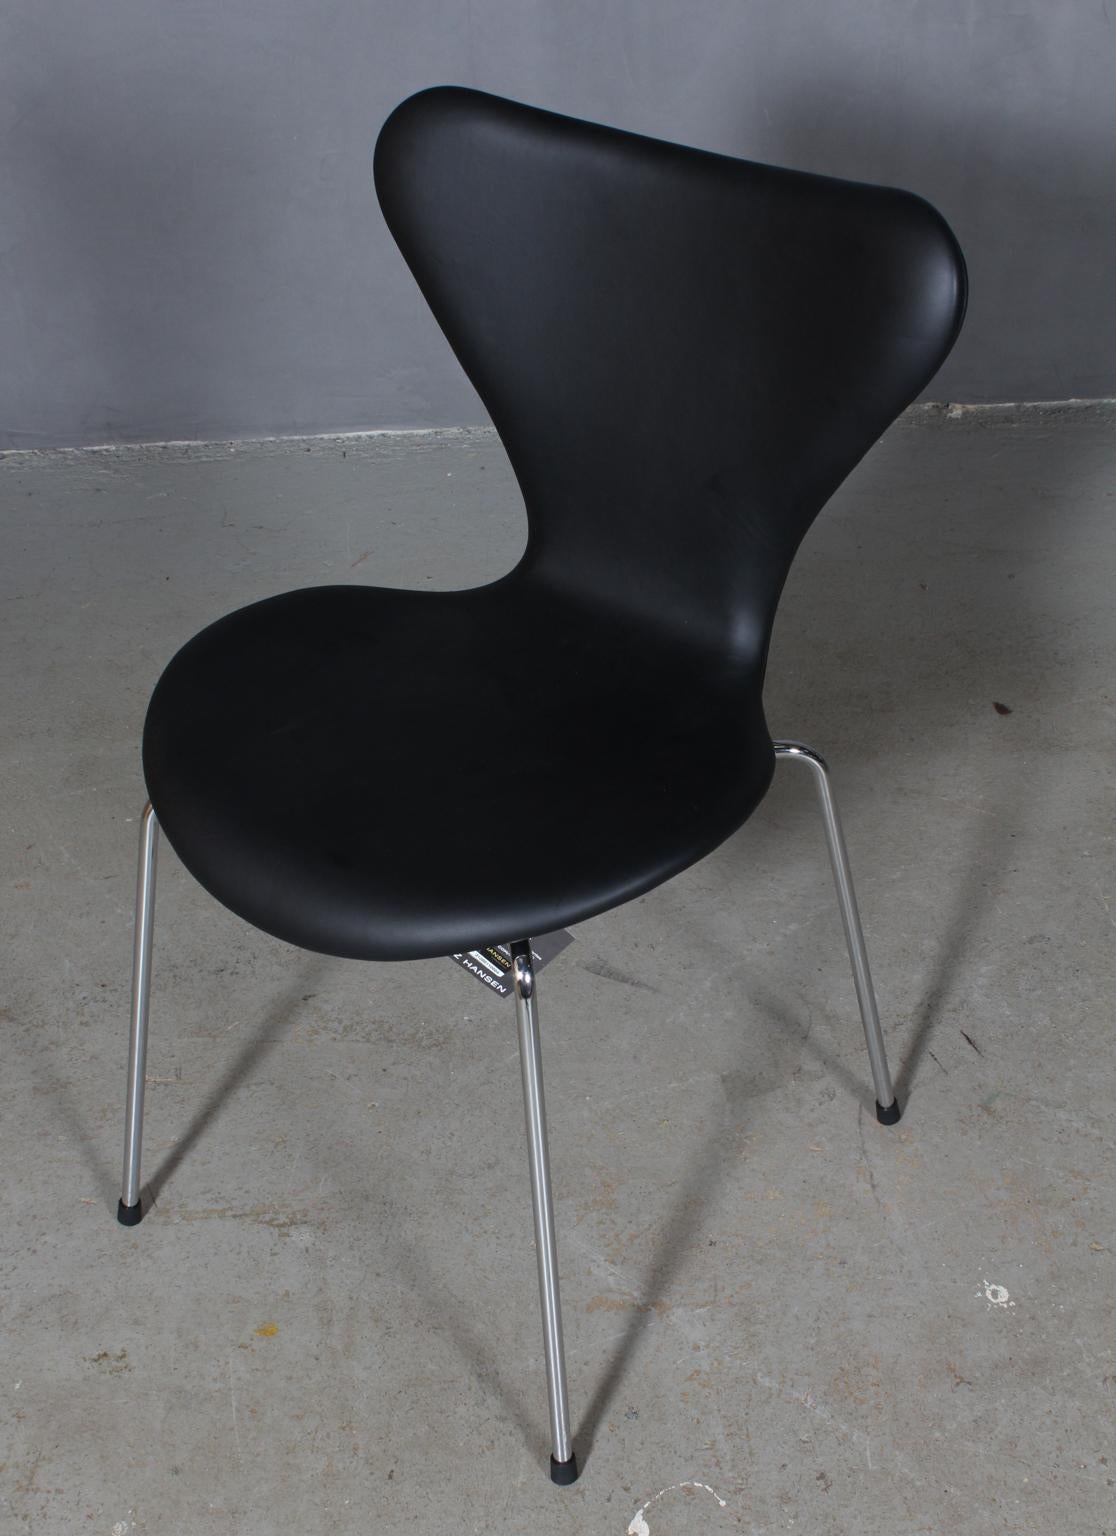 Chaise de salle à manger Arne Jacobsen nouvellement tapissée de cuir aniline fauve vintage.

Base en tube d'acier chromé.

Modèle 3107 Syveren, fabriqué par Fritz Hansen.

Nouvelle coque et base retapissée, avec certificat.